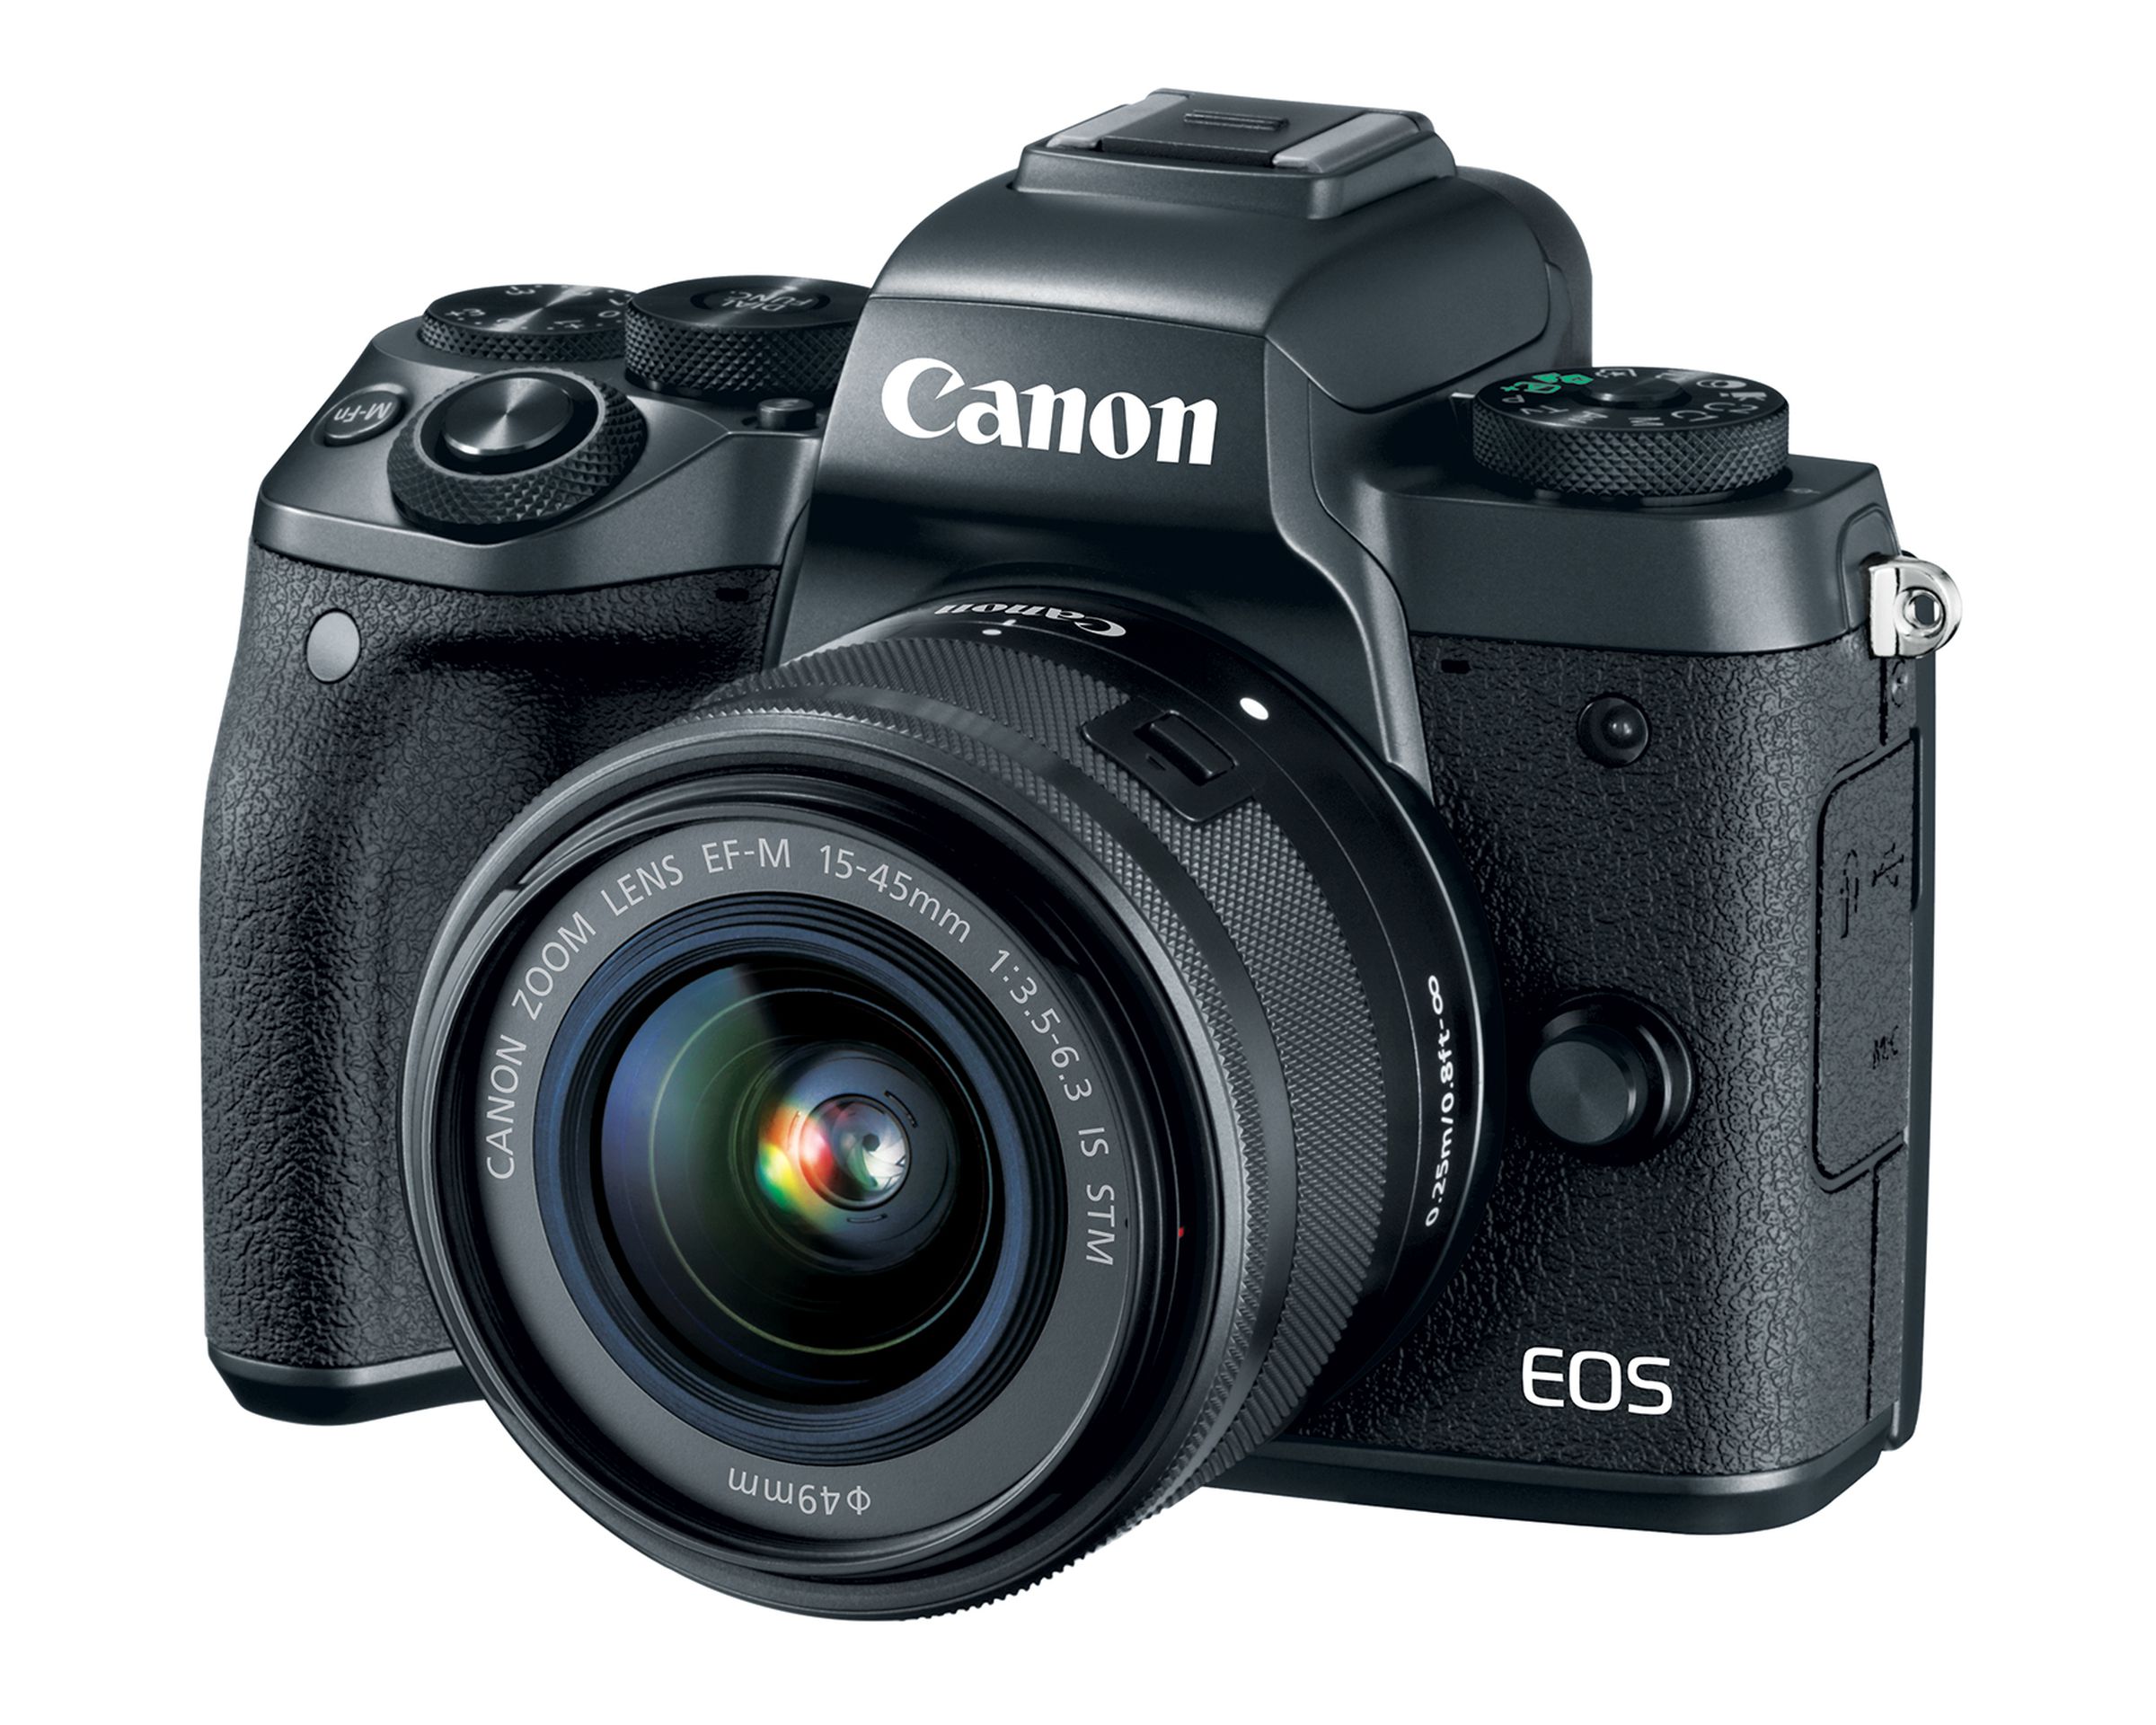 Canon EOS M5 in photos